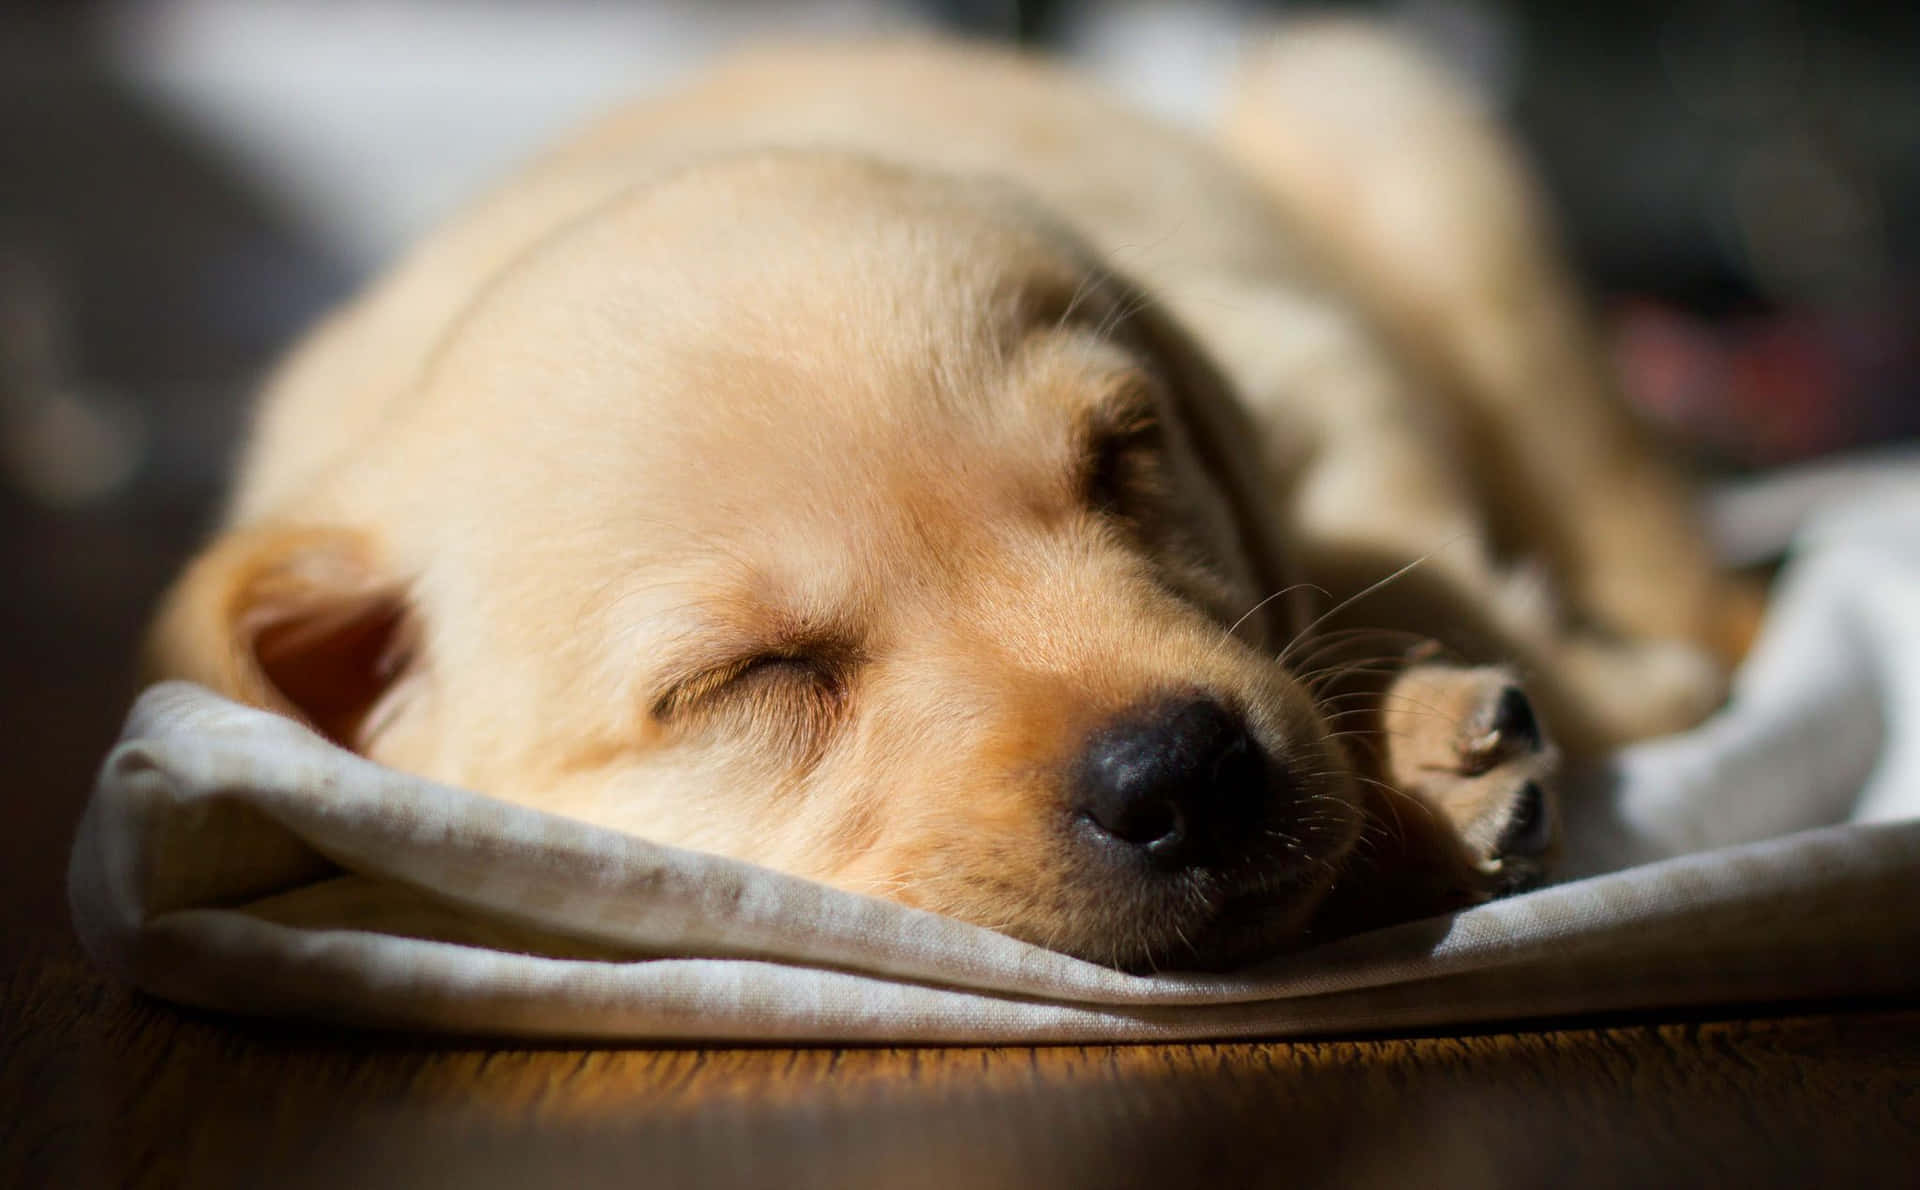 Imagende Un Cachorro De Labrador Durmiendo Con Un Pañuelo.